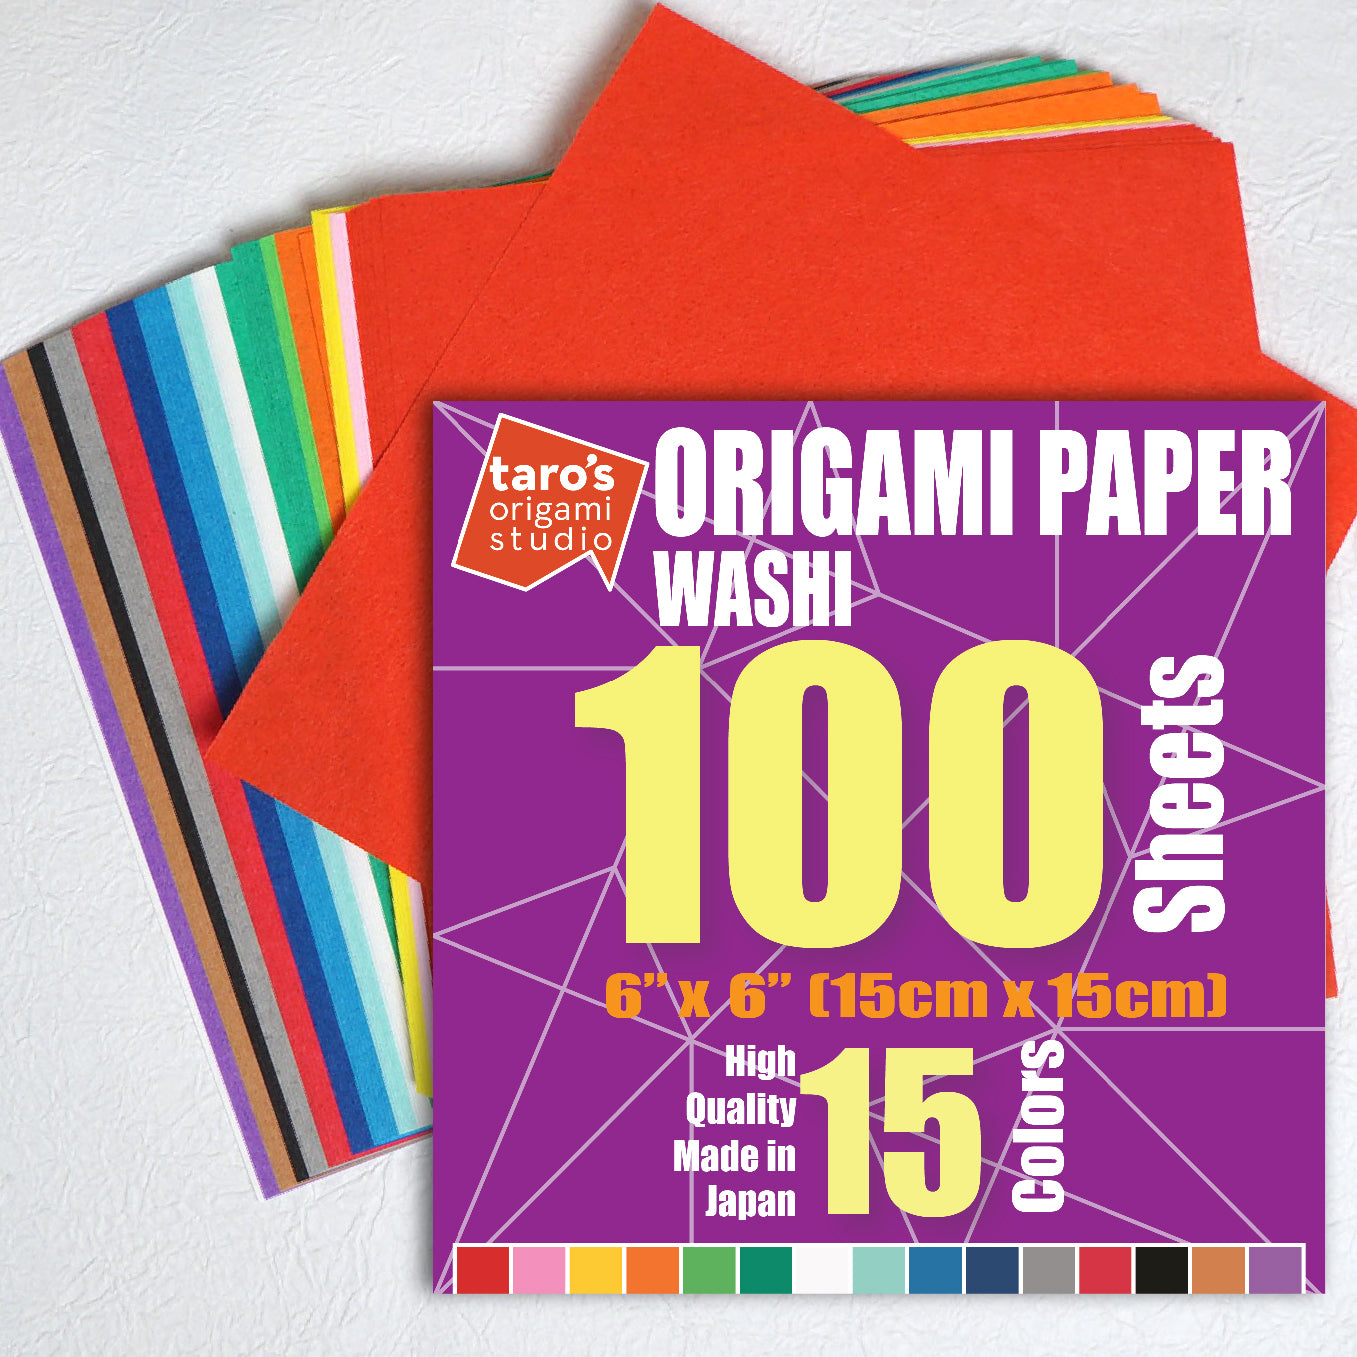 Taro's Origami Studio] Large Duo (Diffrent Colors On Each Side) Doubl –  Taro's Origami Studio Store